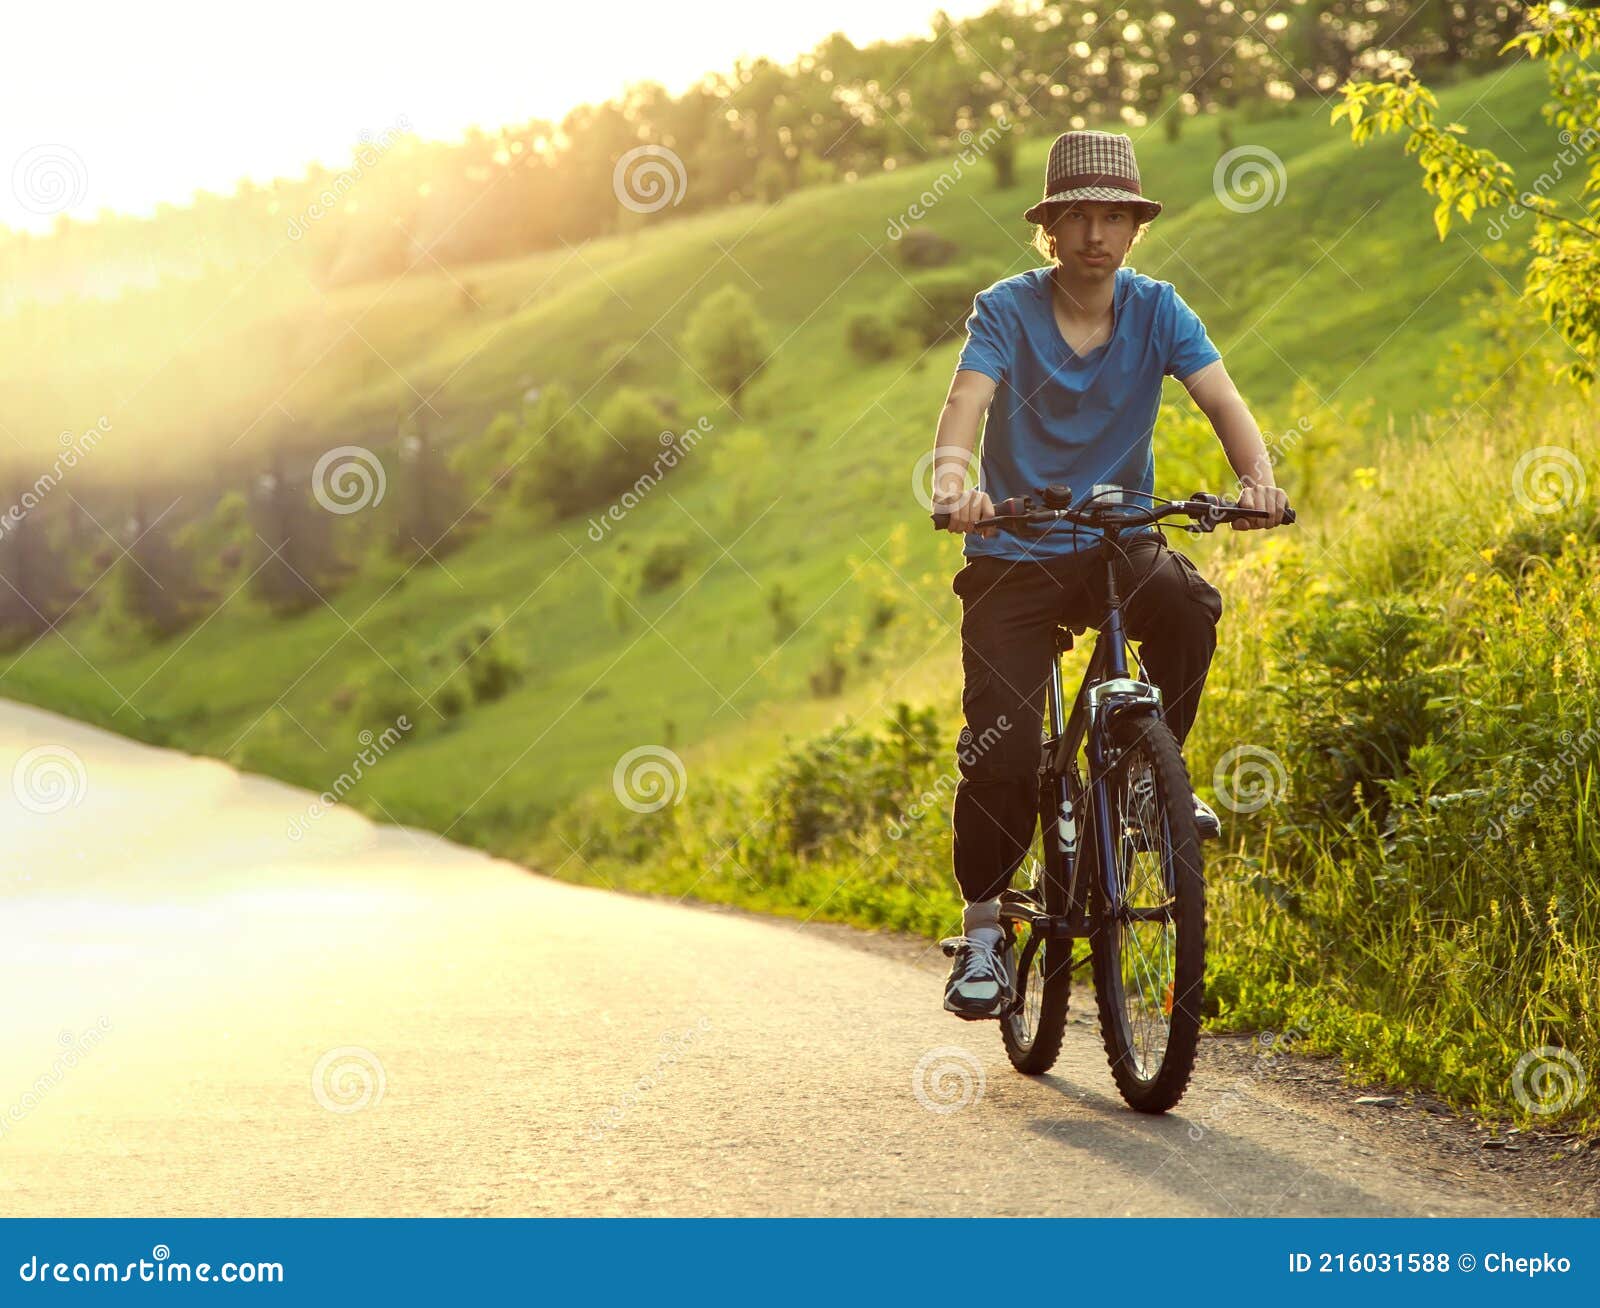 免费照片： 剪影, 自行车, 黄昏, 背光, 阳光, 橙黄色, 日落, 太阳, 景观, 黎明